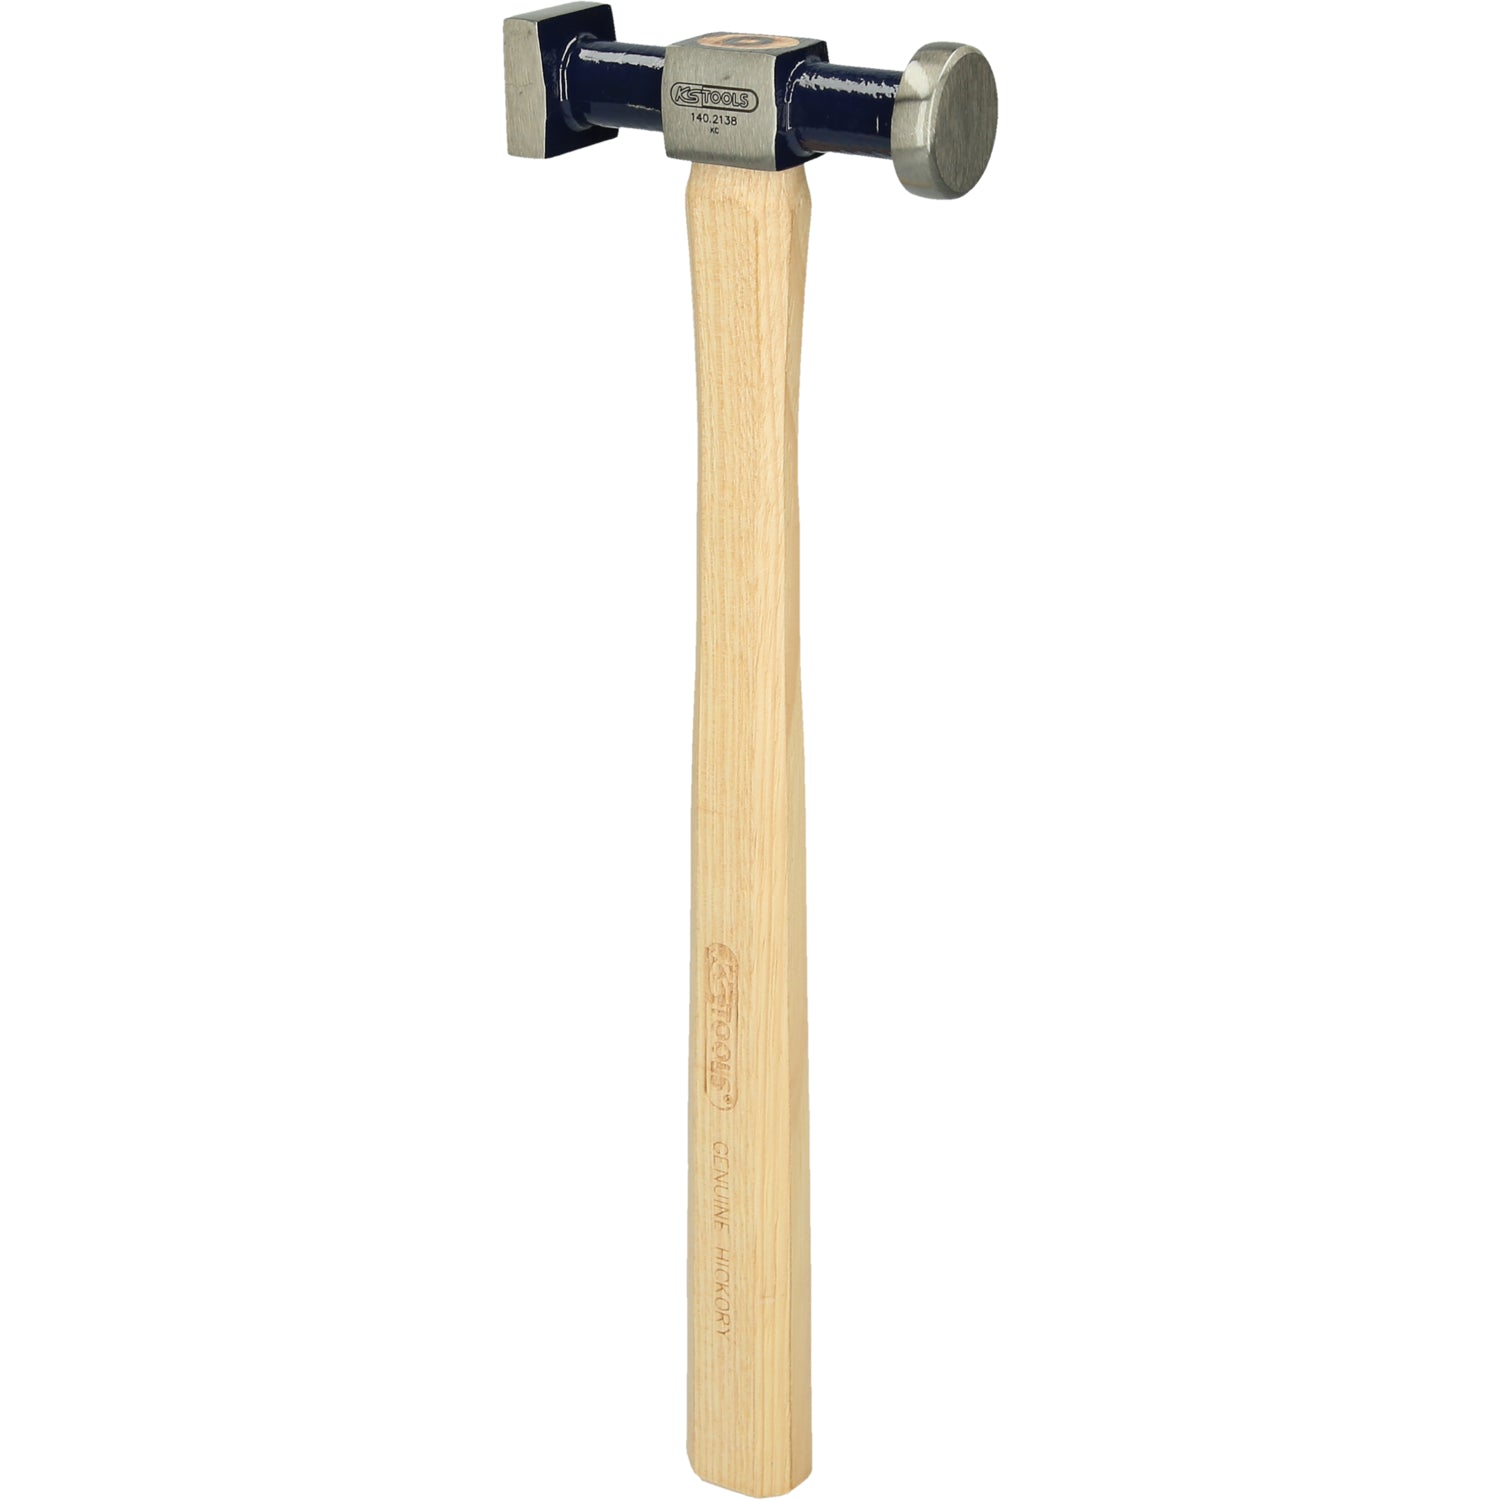 Karosserie-Standard-Hammer, rund/eckig, 325mm